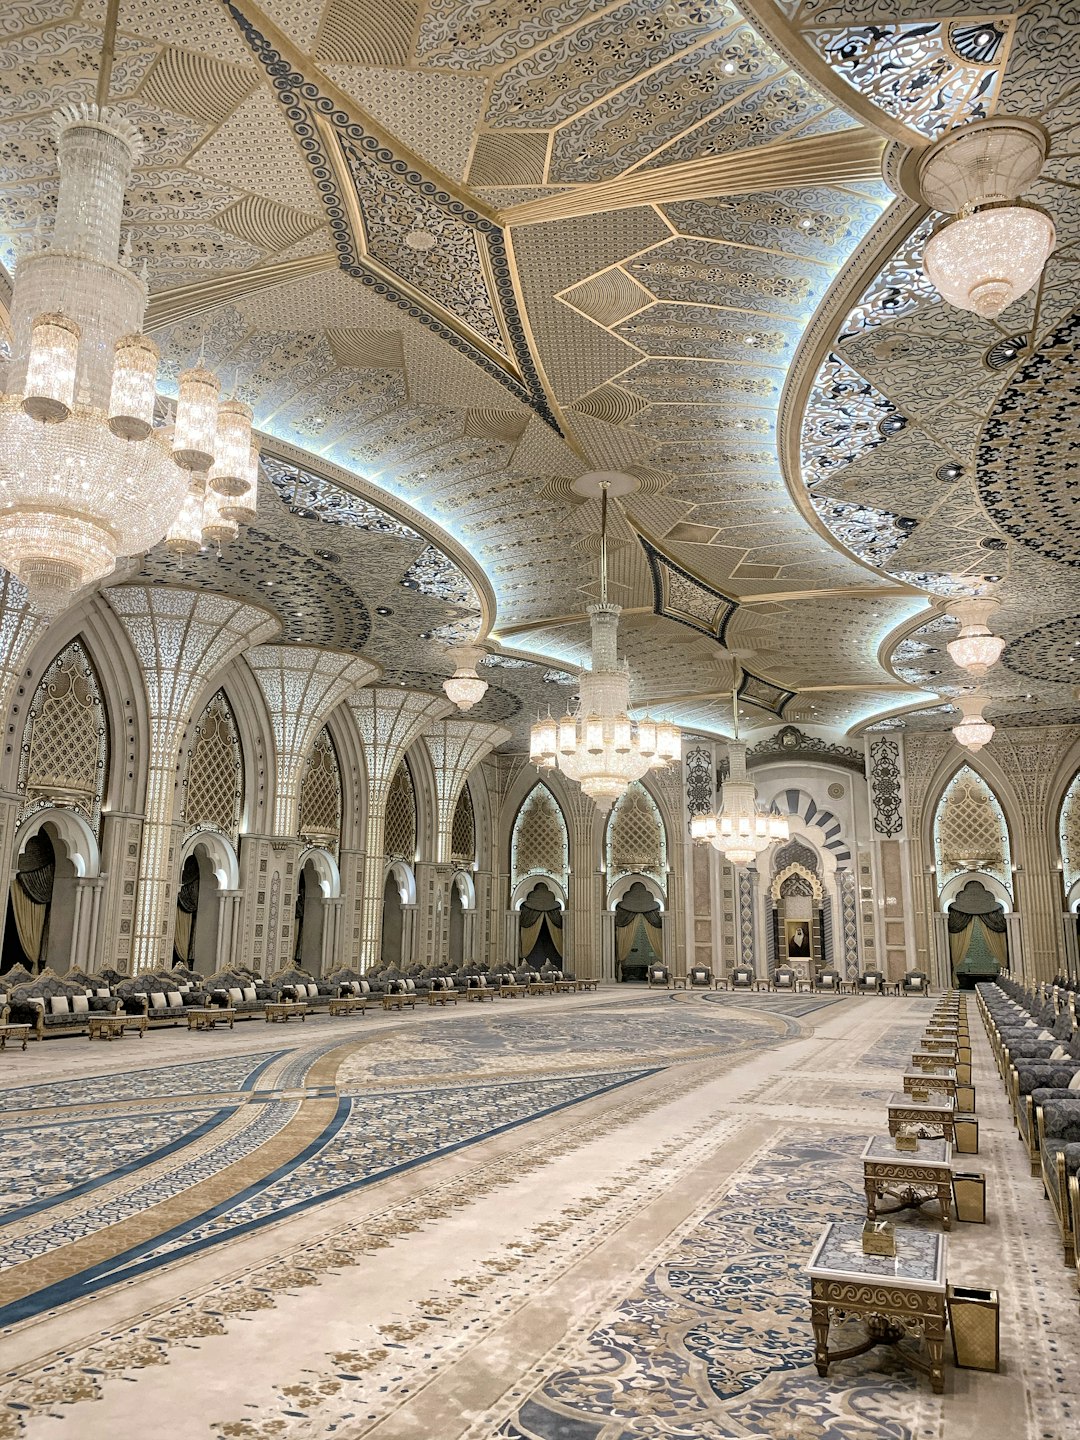 Place of worship photo spot Abu Dhabi United Arab Emirates